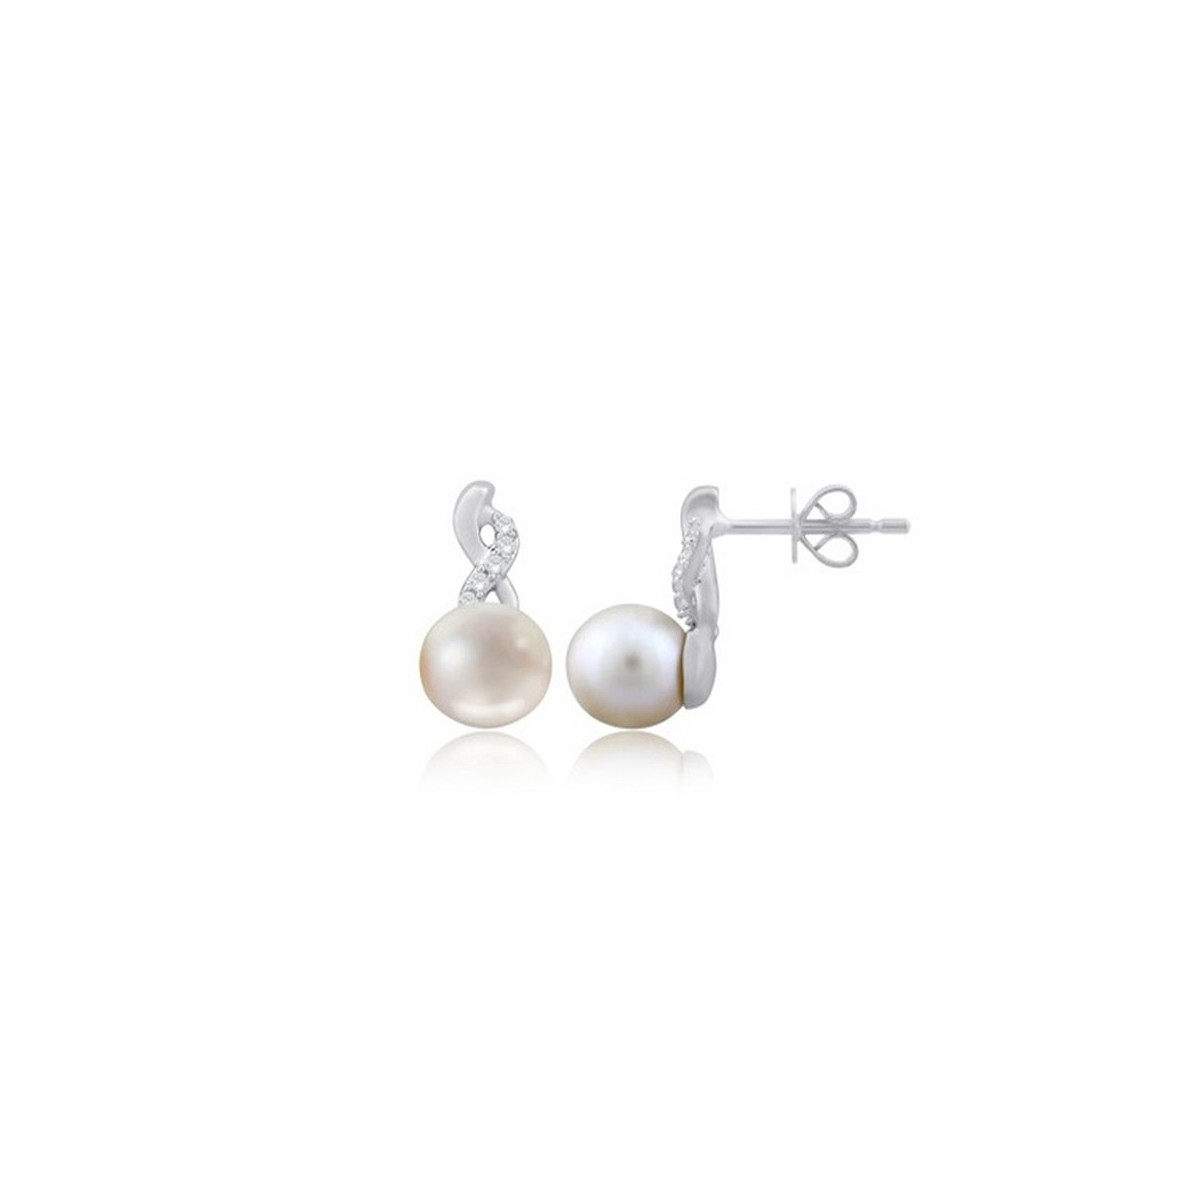 Boucles d'oreilles "Divination" Or, Perles et Diamants